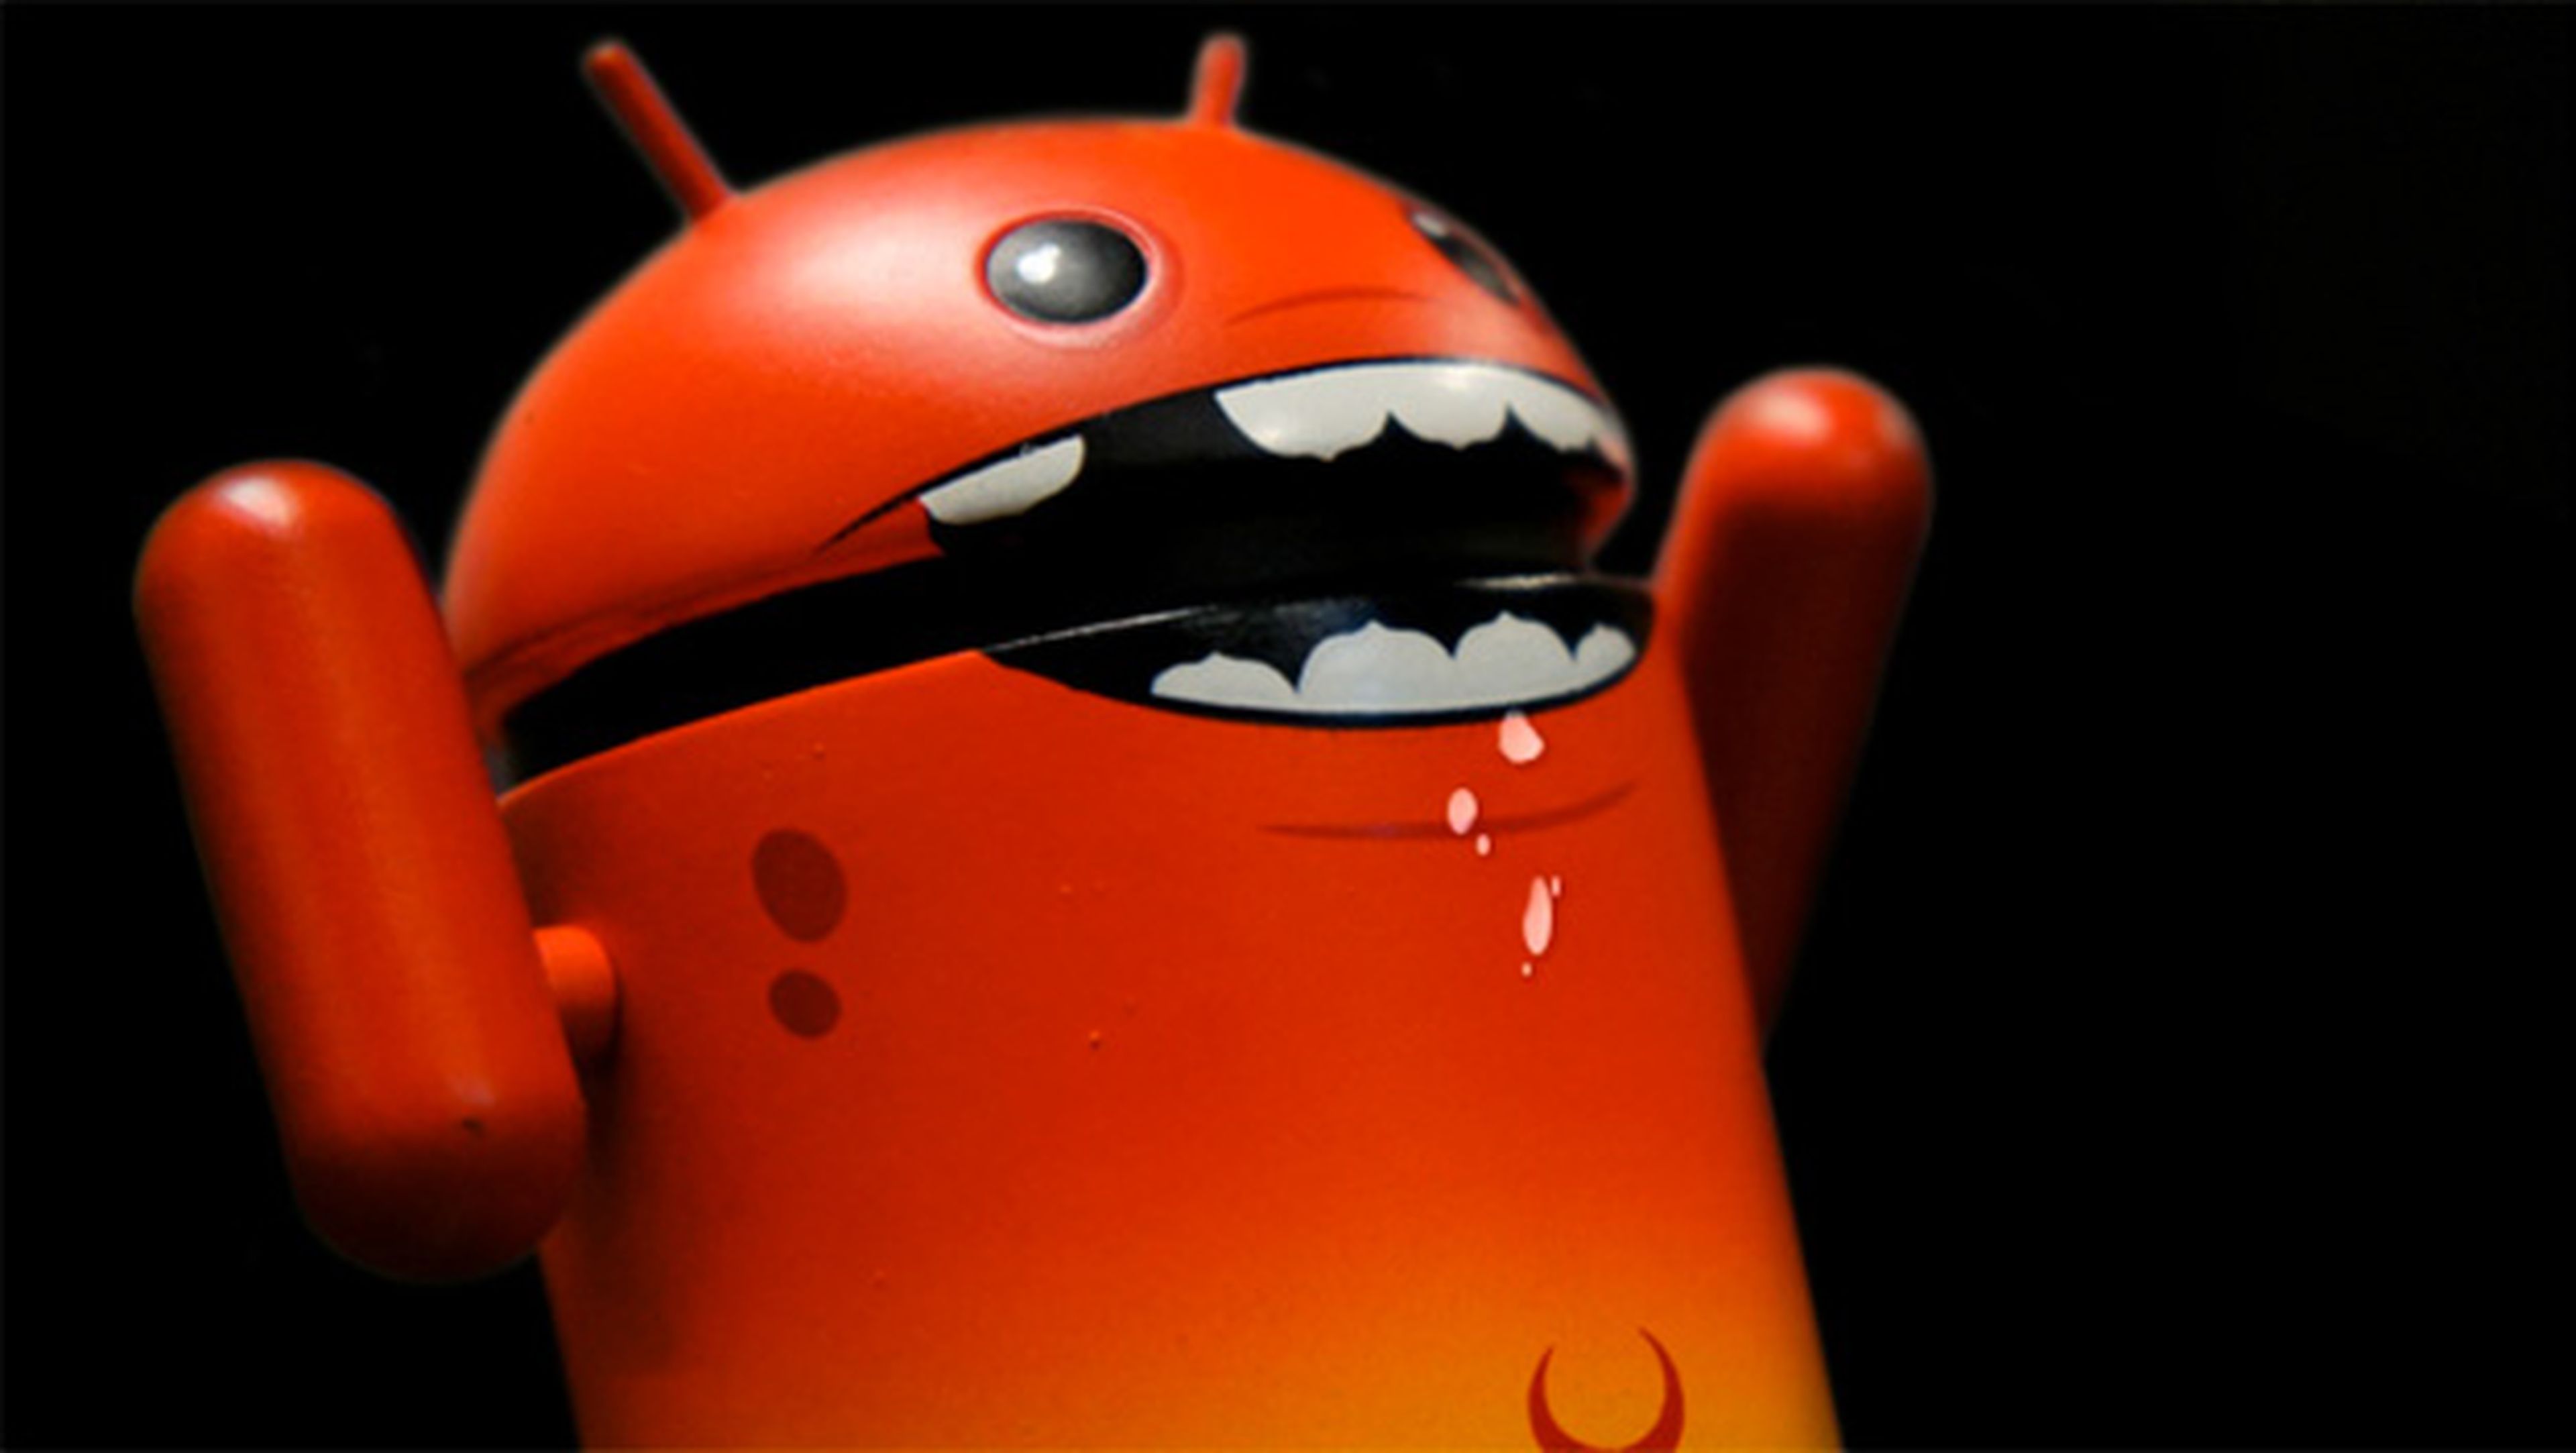 Decenas de apps falsas redirigen en Android a webs porno